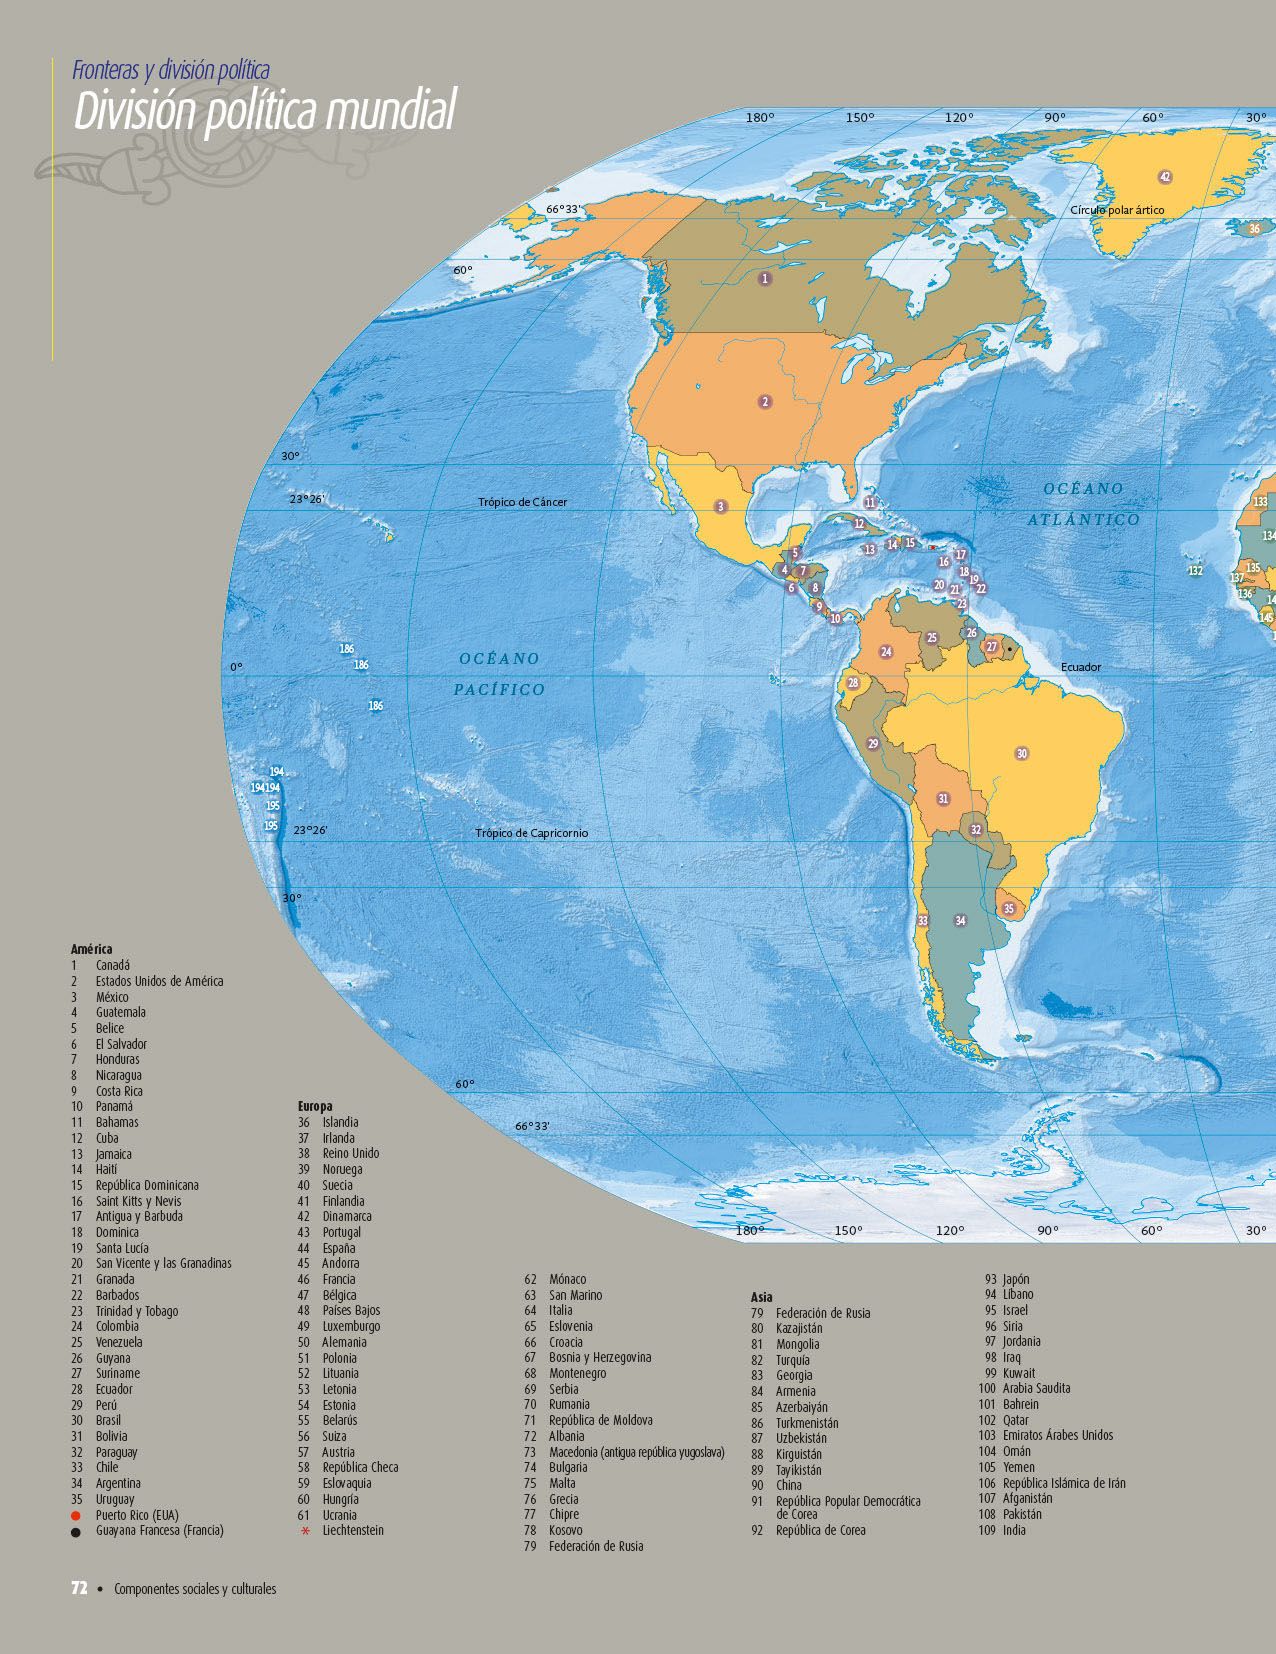 Atlas del Mundo Quinto grado 2020-2021 - Página 72 de 121 ...